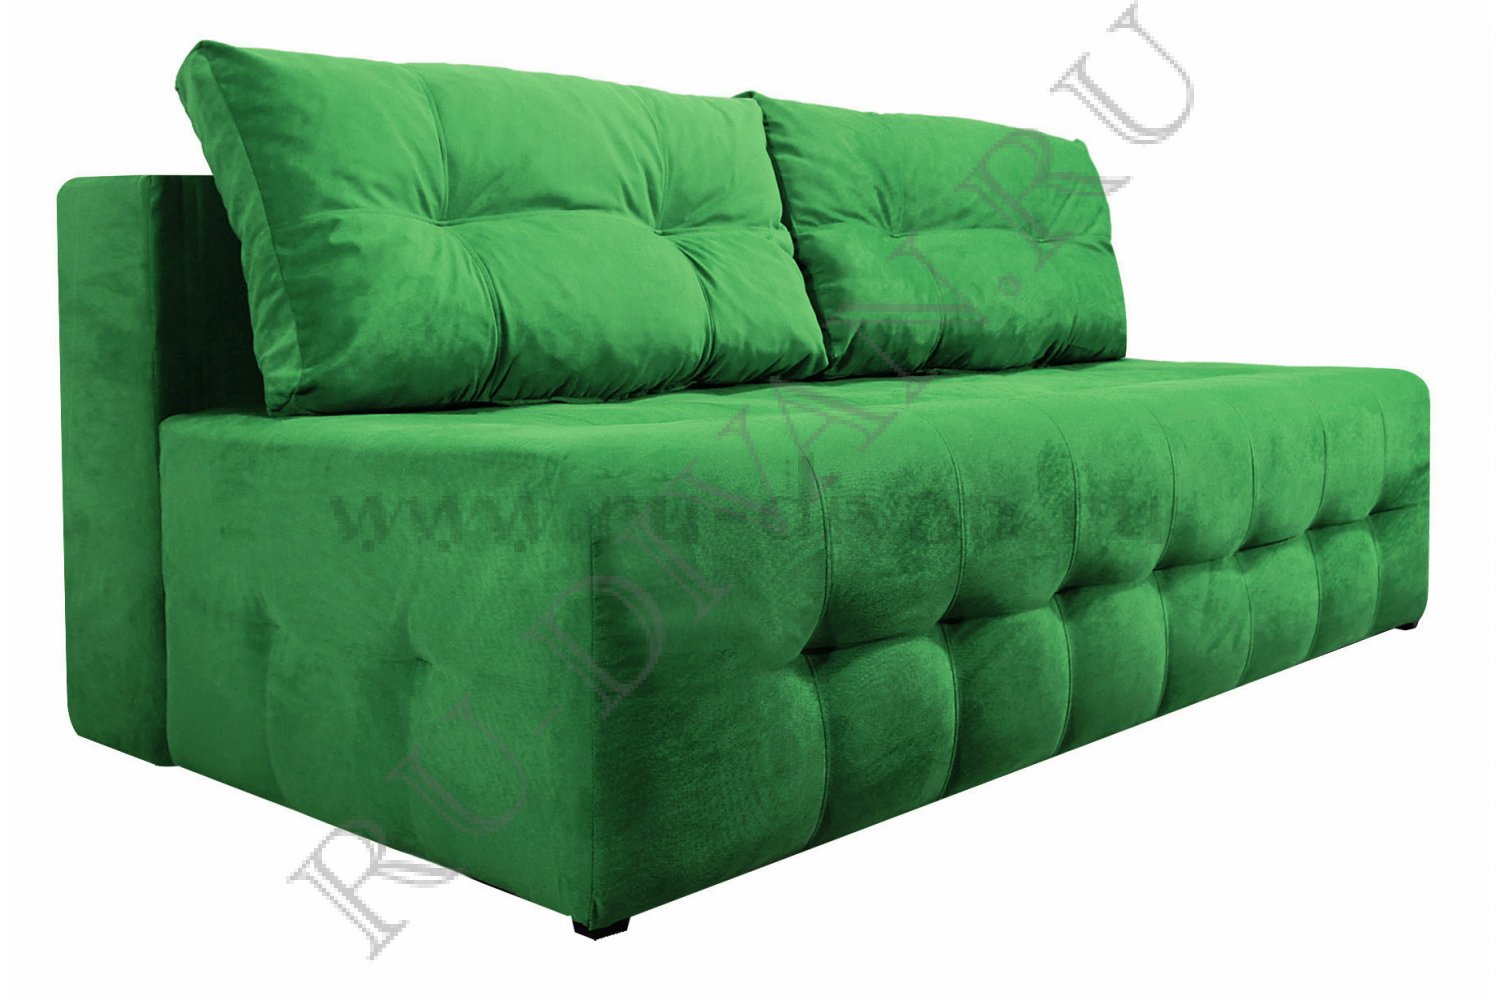 Прямой диван БОСС МИНИ зеленый – характеристики